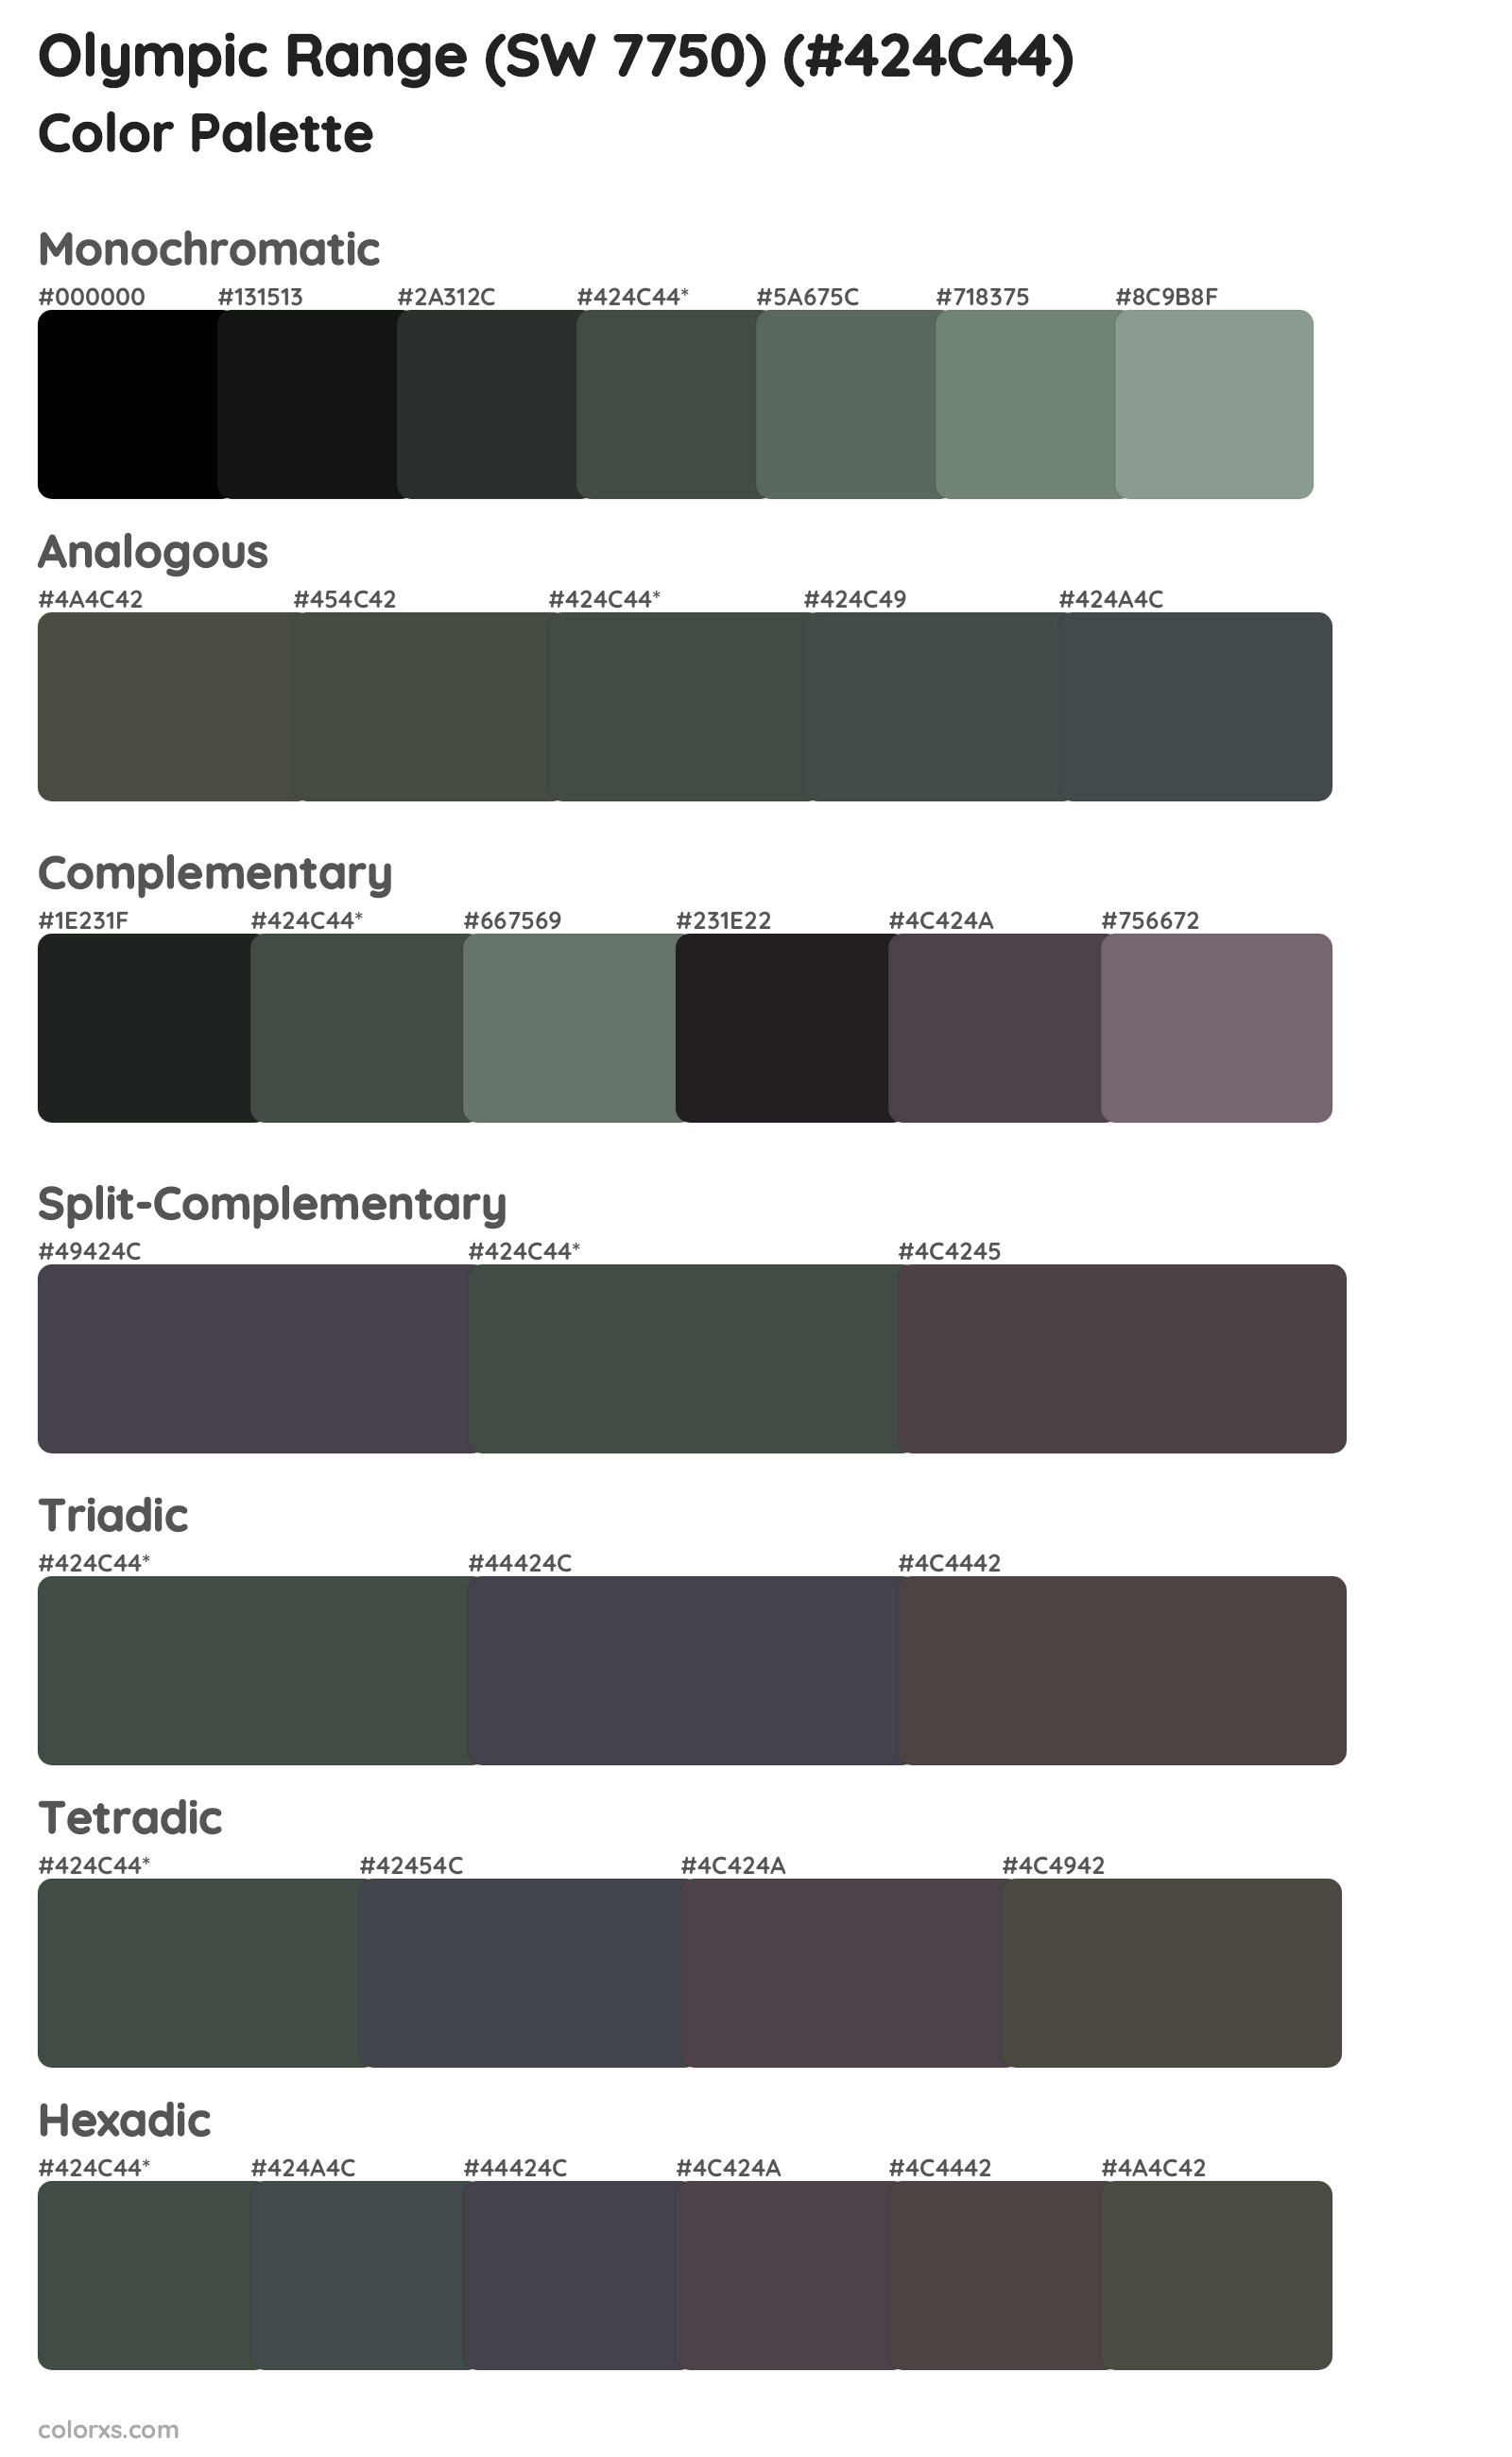 Olympic Range (SW 7750) Color Scheme Palettes